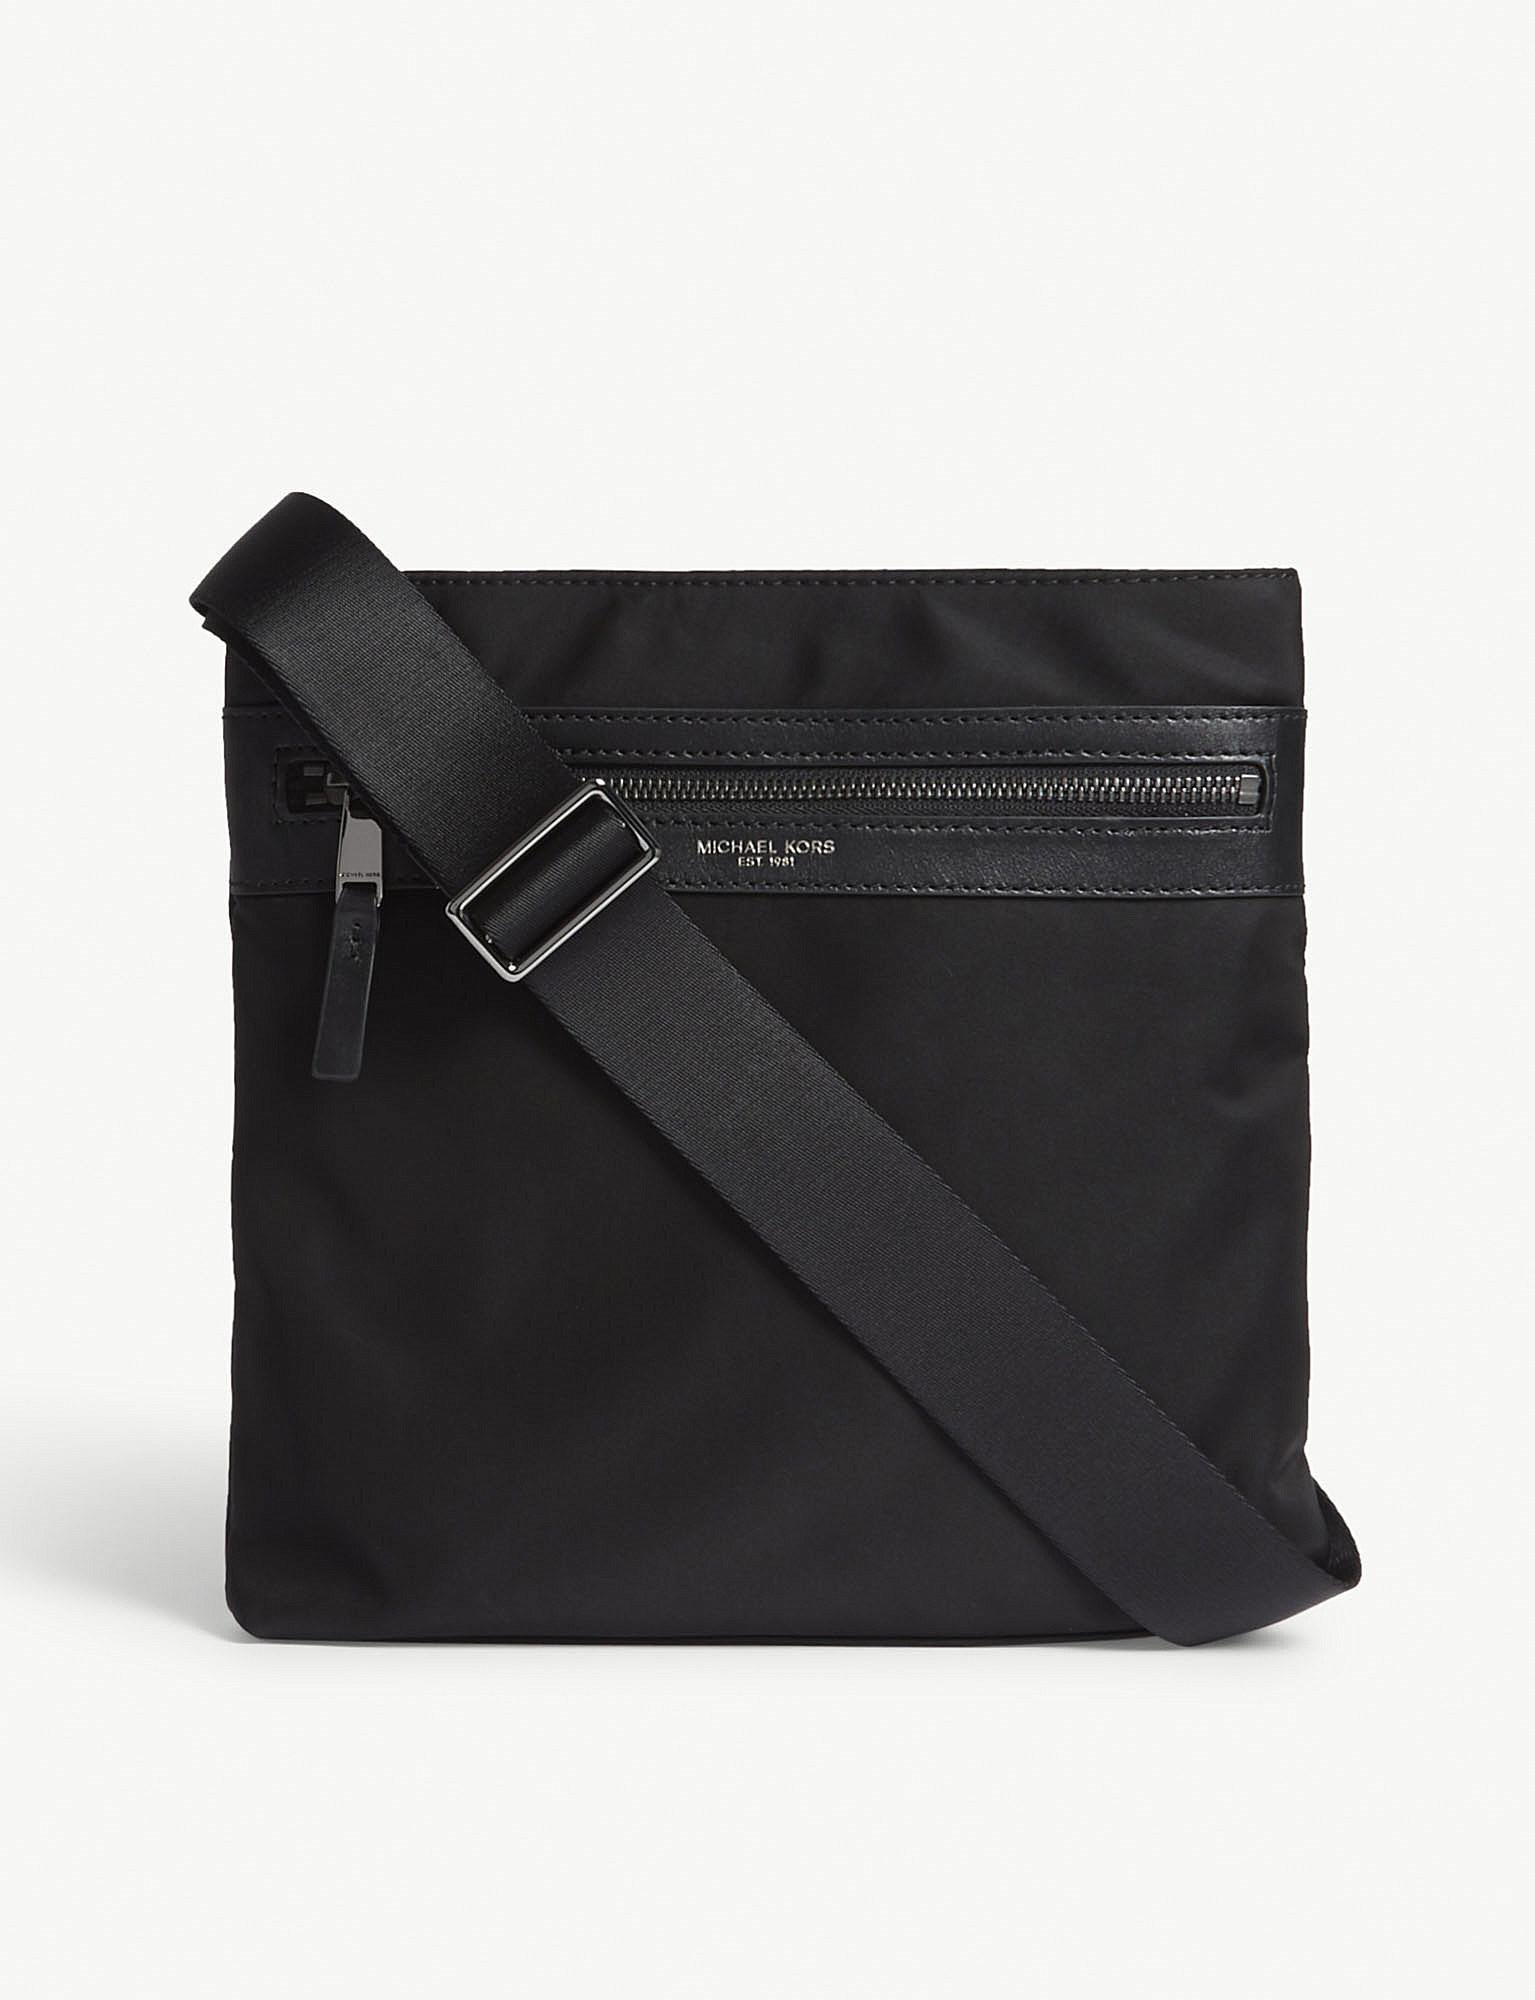 Lyst - Michael Kors Lightweight Nylon Cross-body Bag in Black for Men